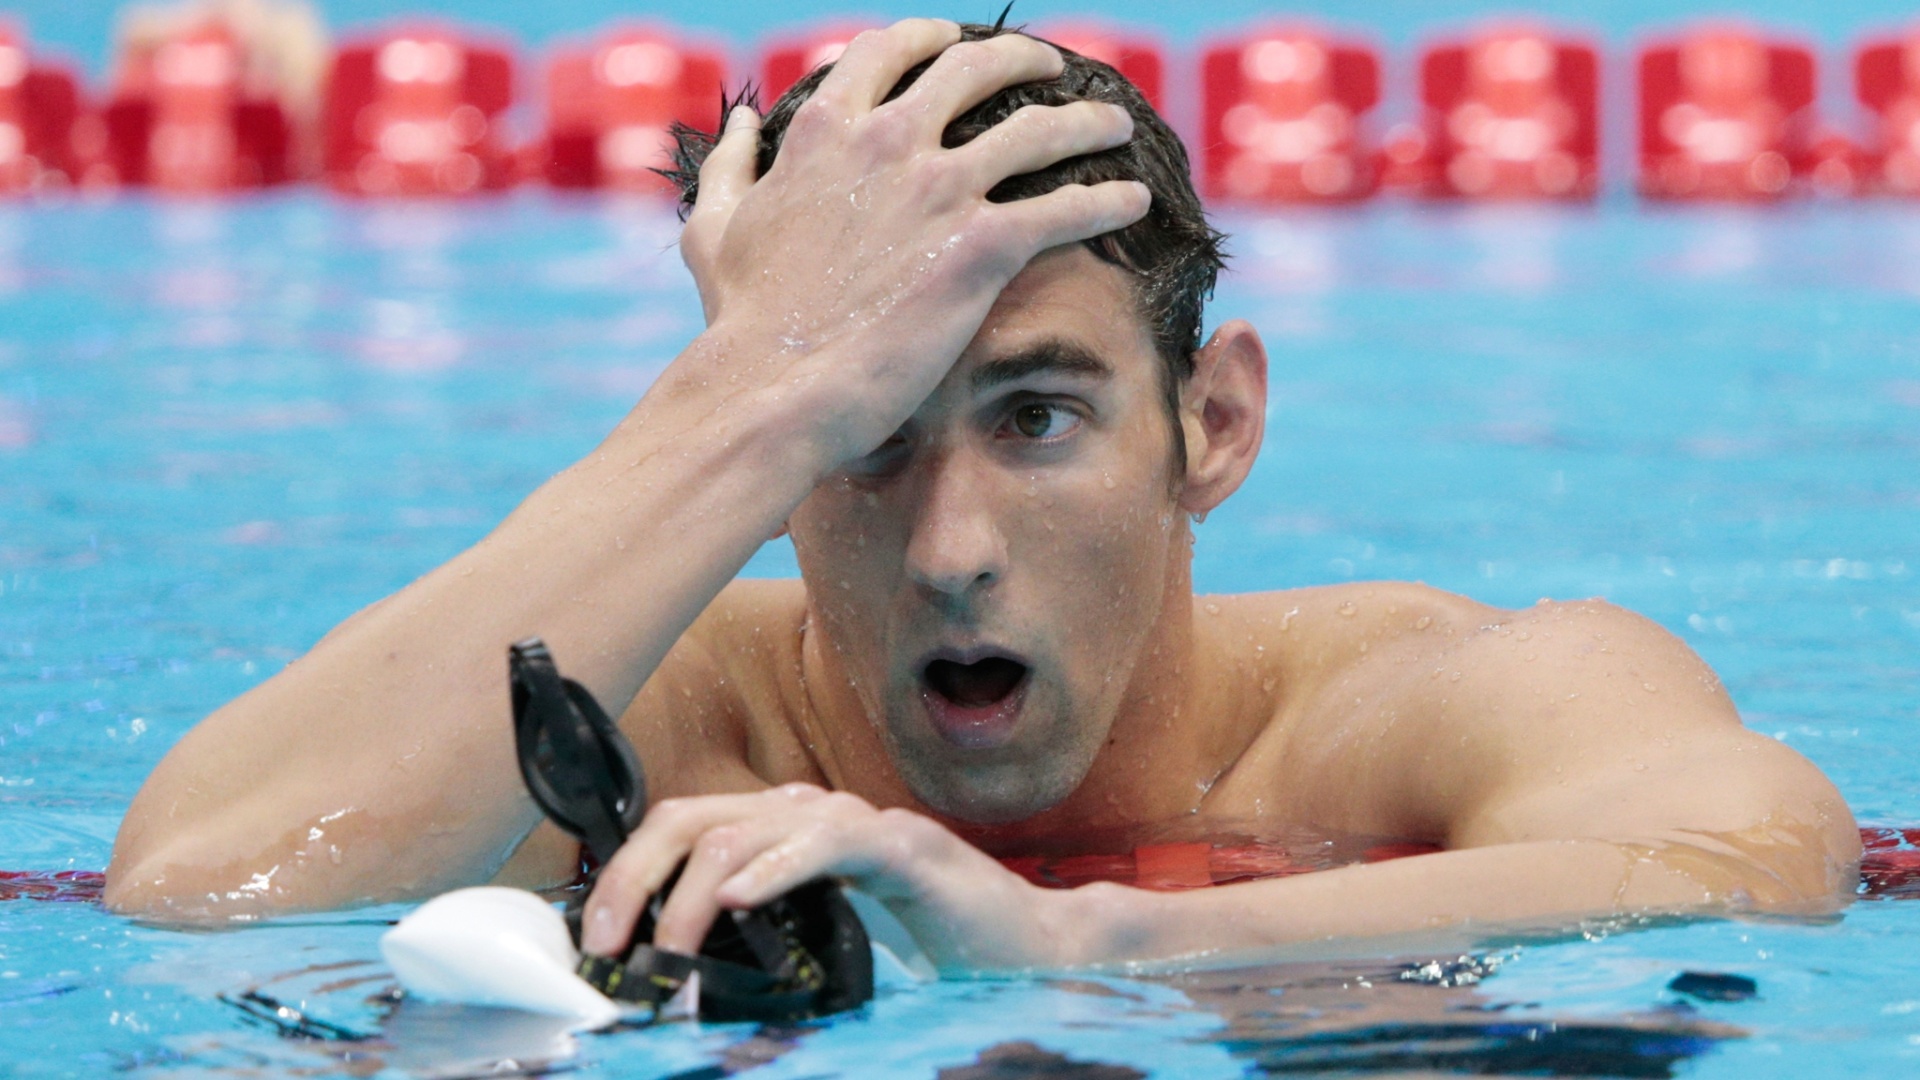 Michael Phelps lamenta quarto lugar nos 400 m medley nos Jogos Olímpicos de Londres